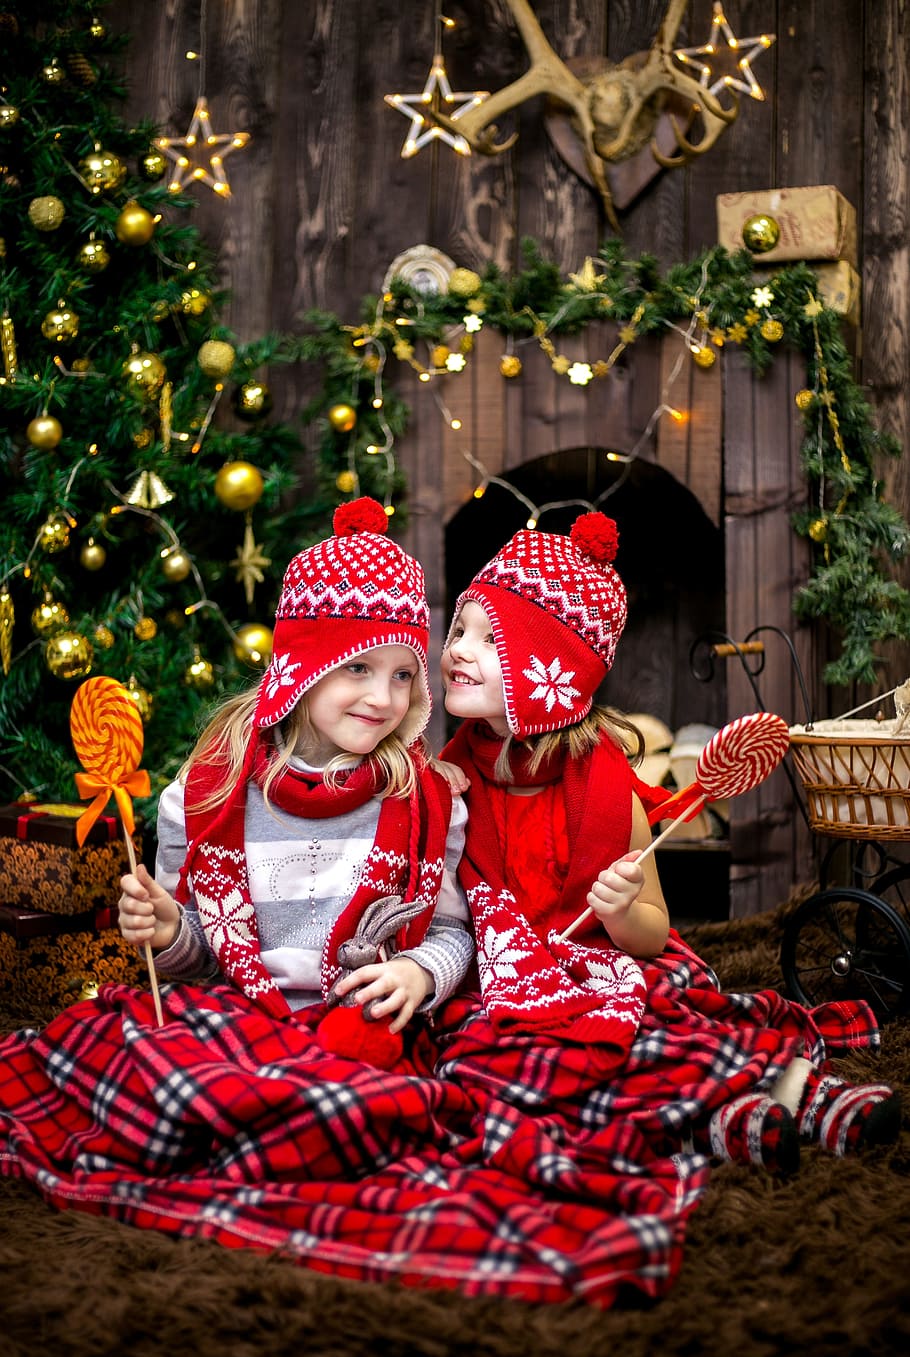 두, 소녀, 빨강-흰색-검정, 공정한, 섬 귀 플랩 모자, 스카프, 보유, 막대 사탕, 새해 전날, 아이들